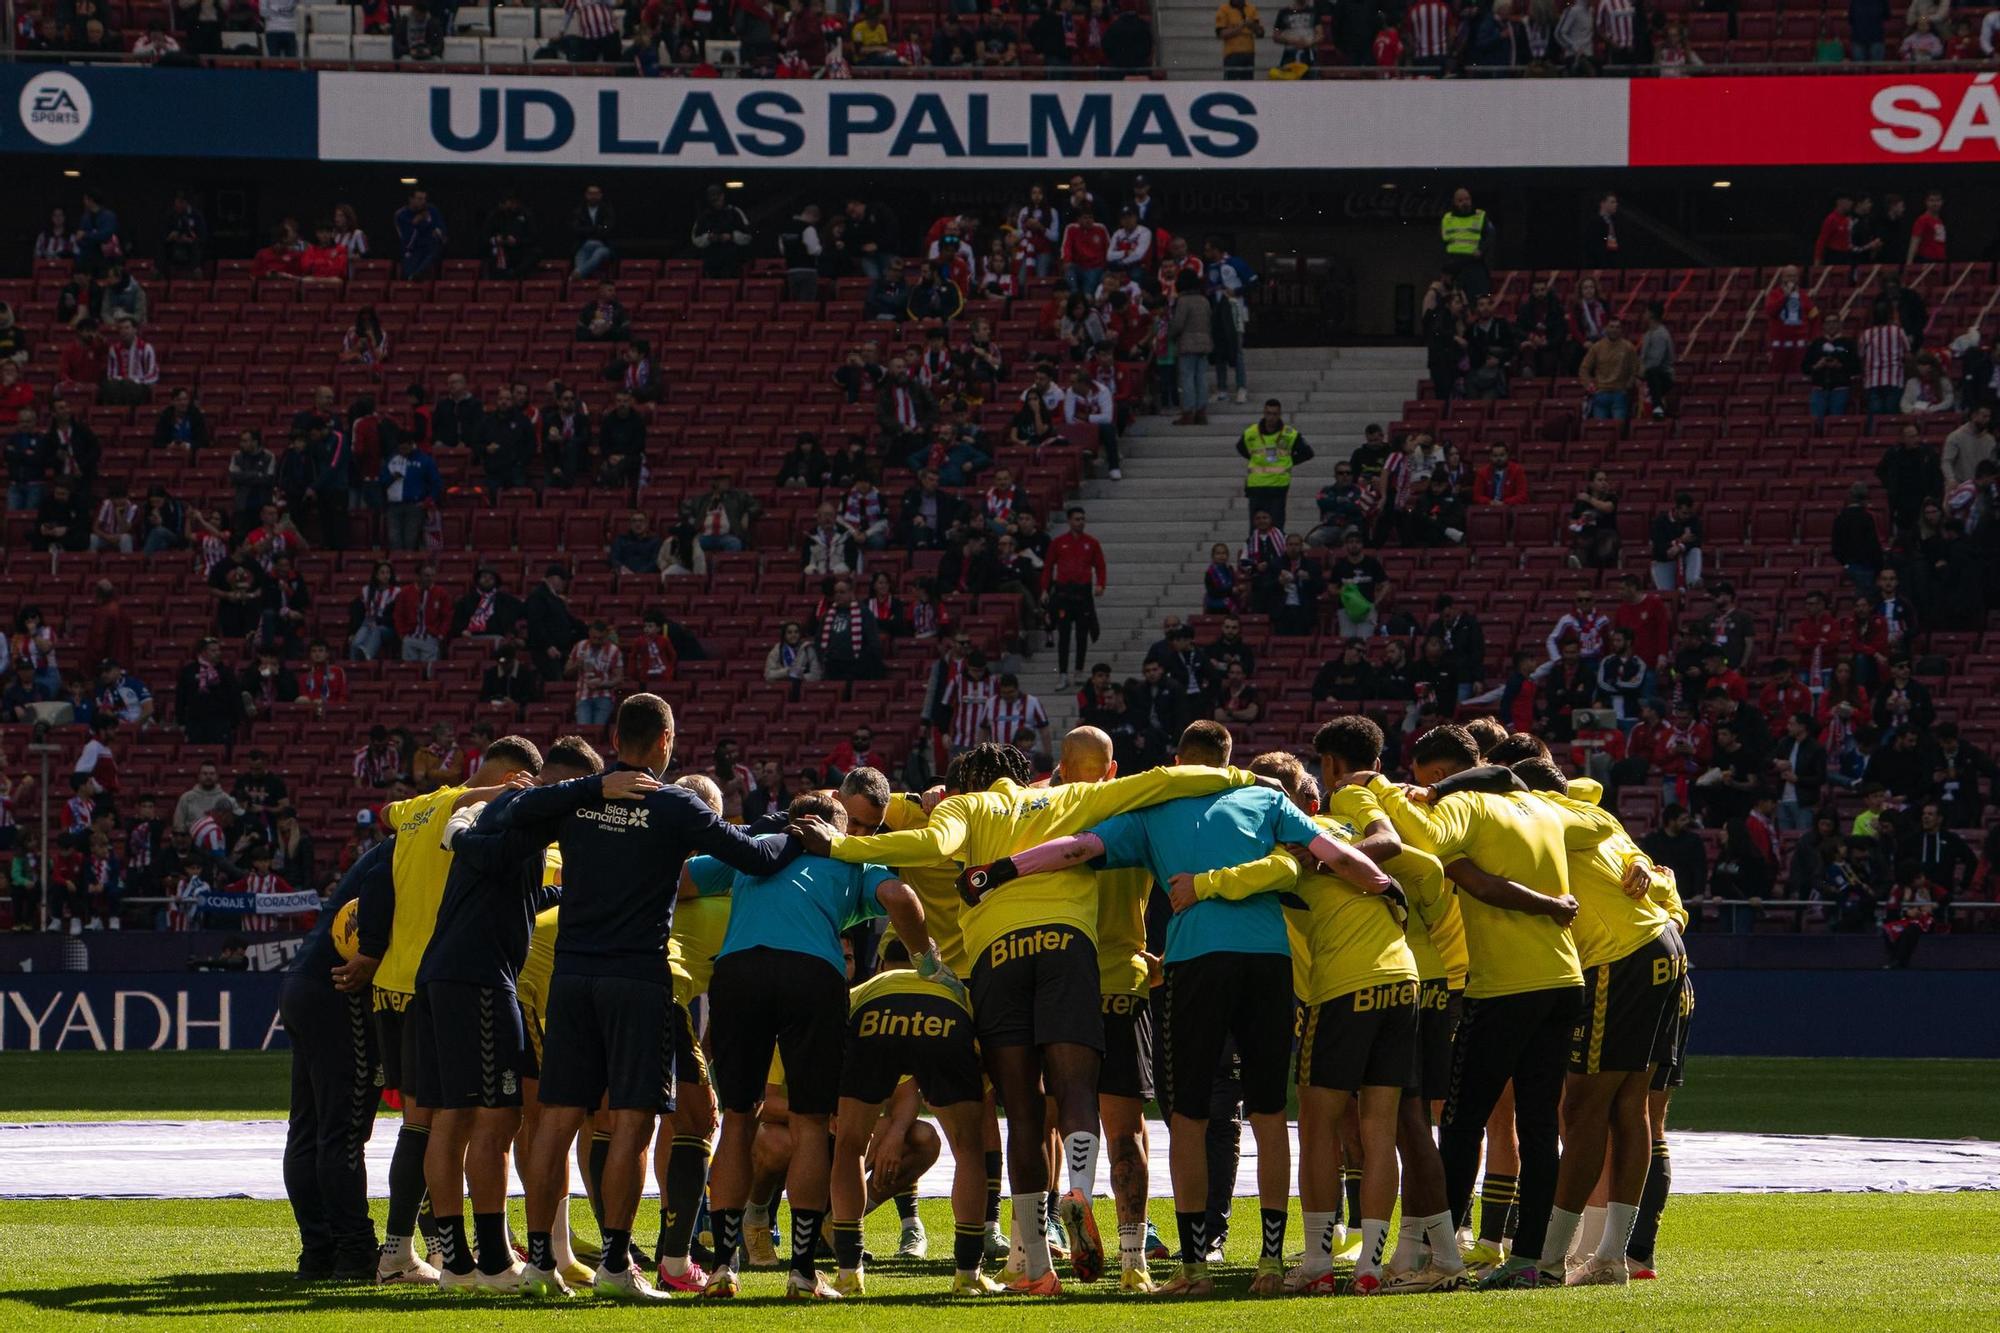 Fotos: Atlético de Madrid - UD Las Palmas